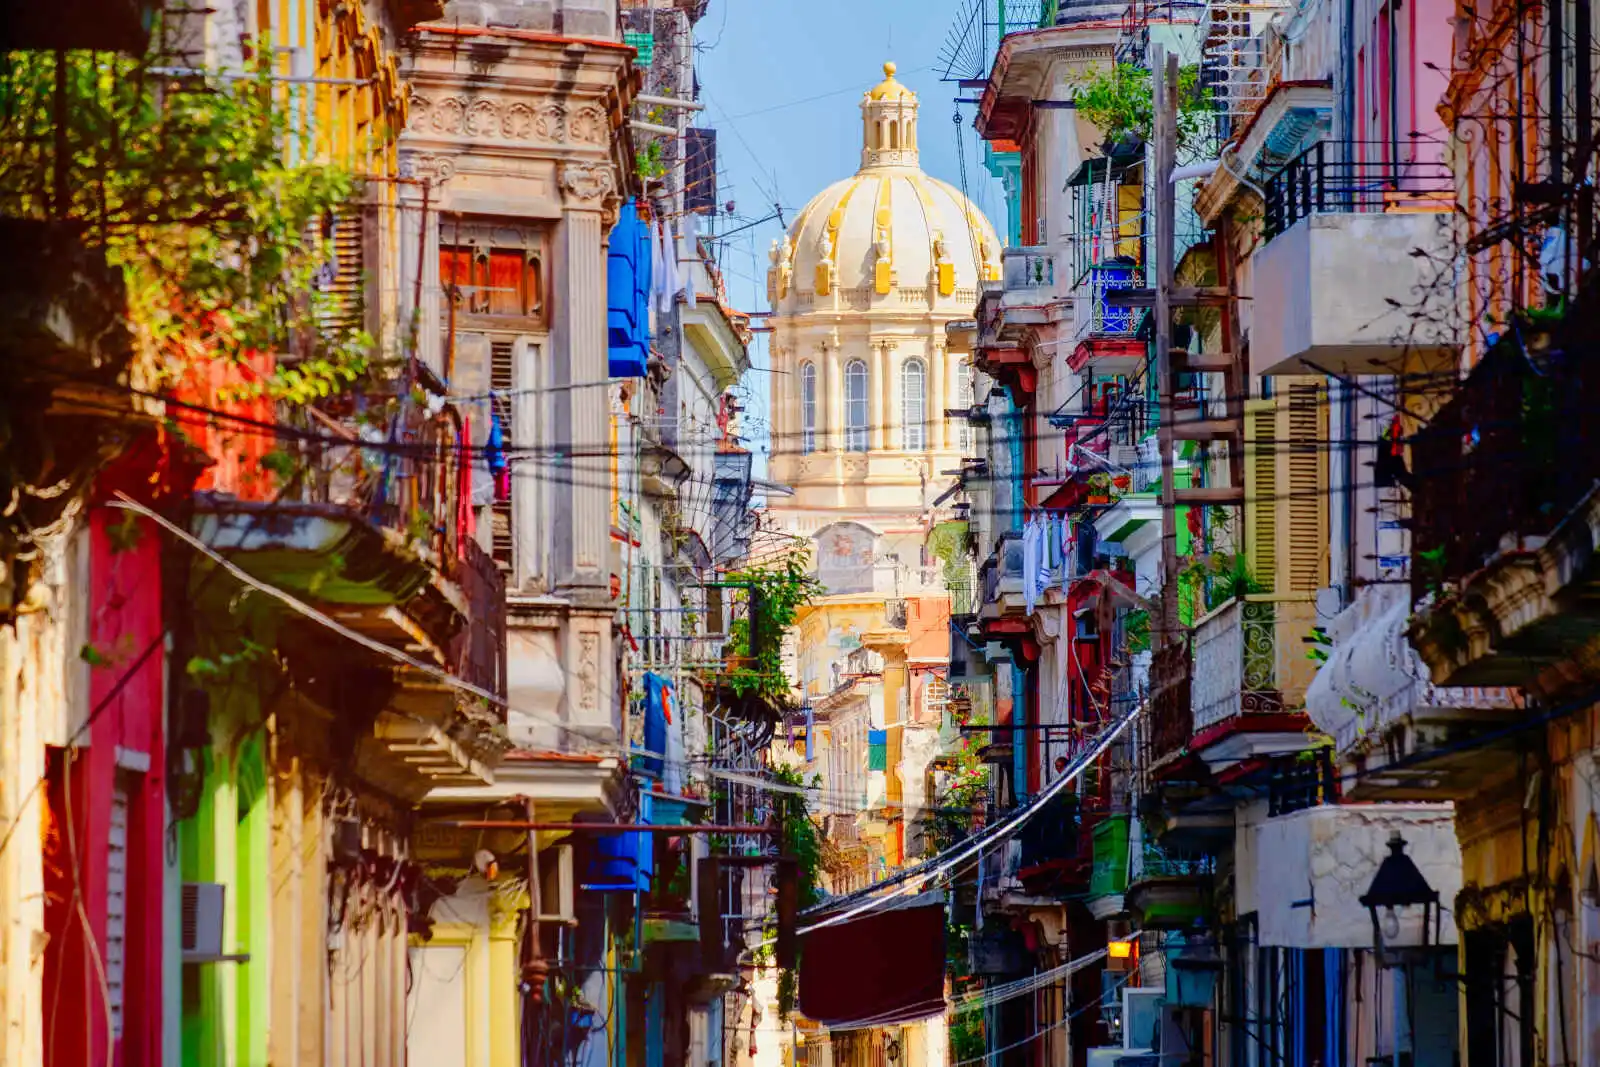 La Havane, Cuba